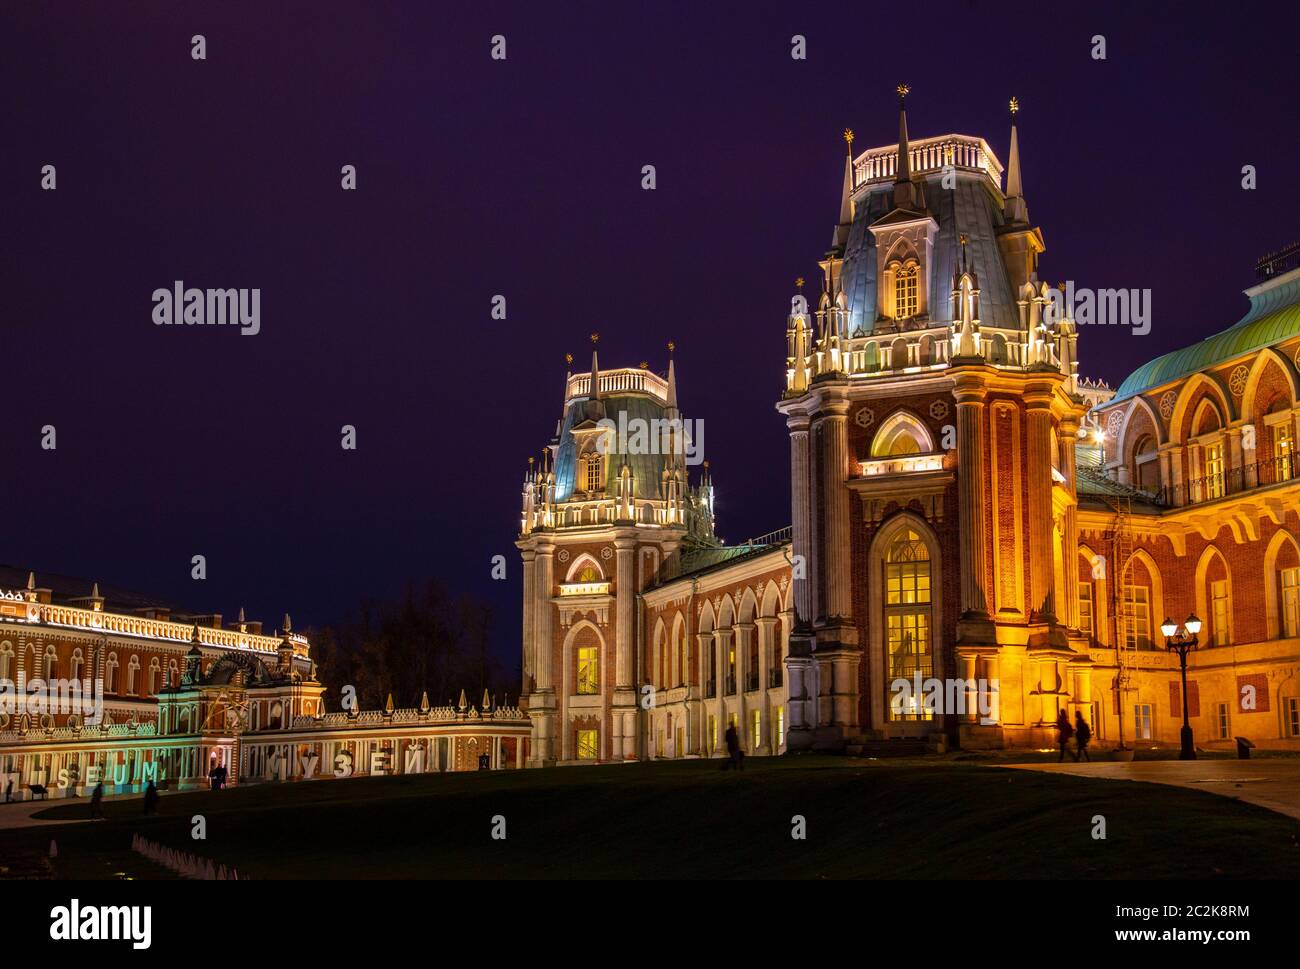 Mosca, Russia, 23 ottobre 2019: Grand Palace, Parco Tsaritsyno. Foto di un punto di riferimento serale. Popolare parco Museo Tsaritsyno al tramonto Foto Stock